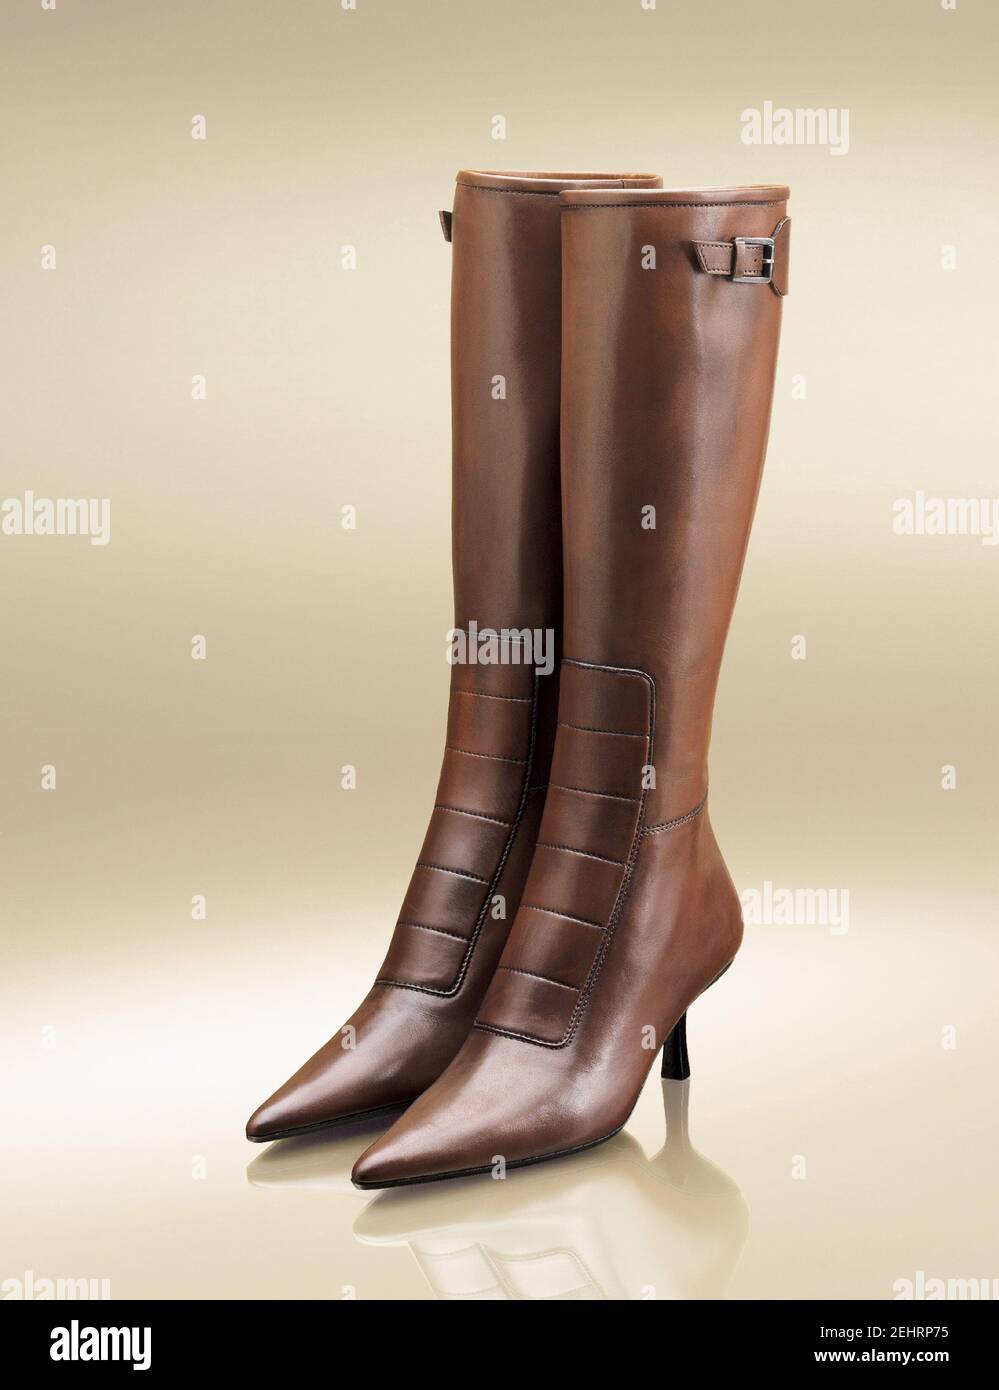 Elegant women's boots with heels. Studio shot. Stock Photo